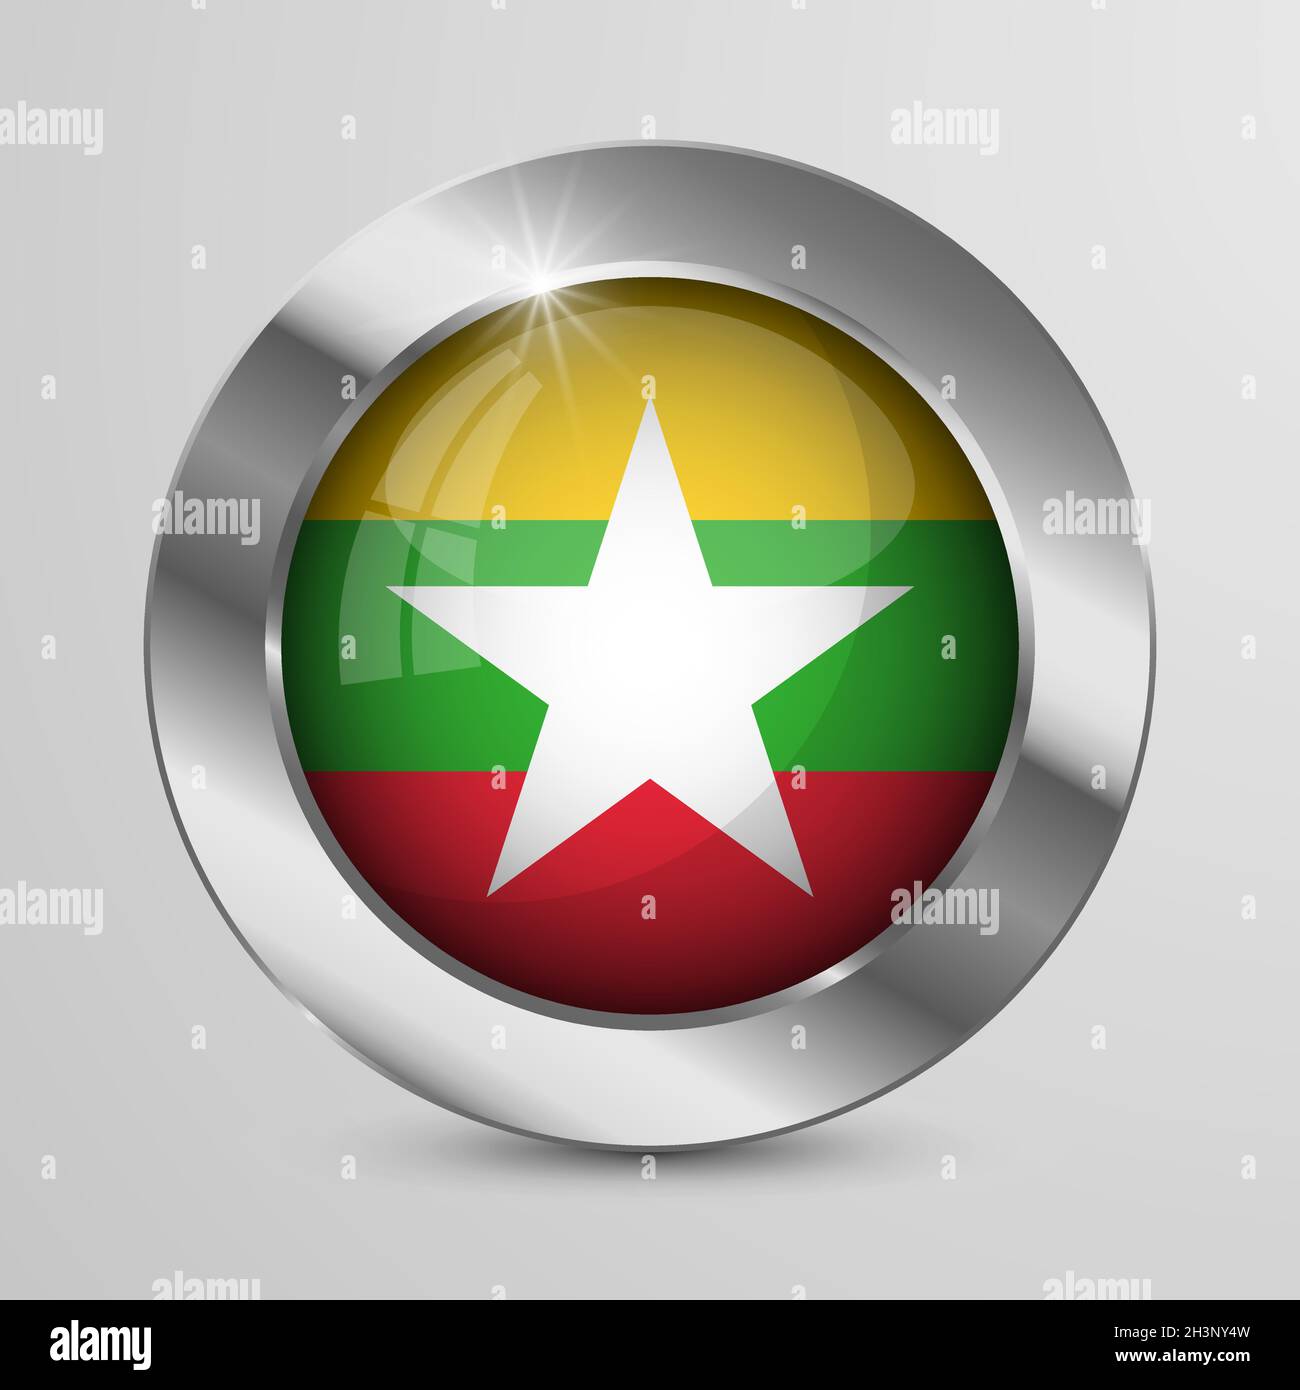 EPS10 Vector Patriotic Knopf mit Myanmar Flaggen Farben. Ein Element der Wirkung für die Verwendung, die Sie daraus machen möchten. Stock Vektor